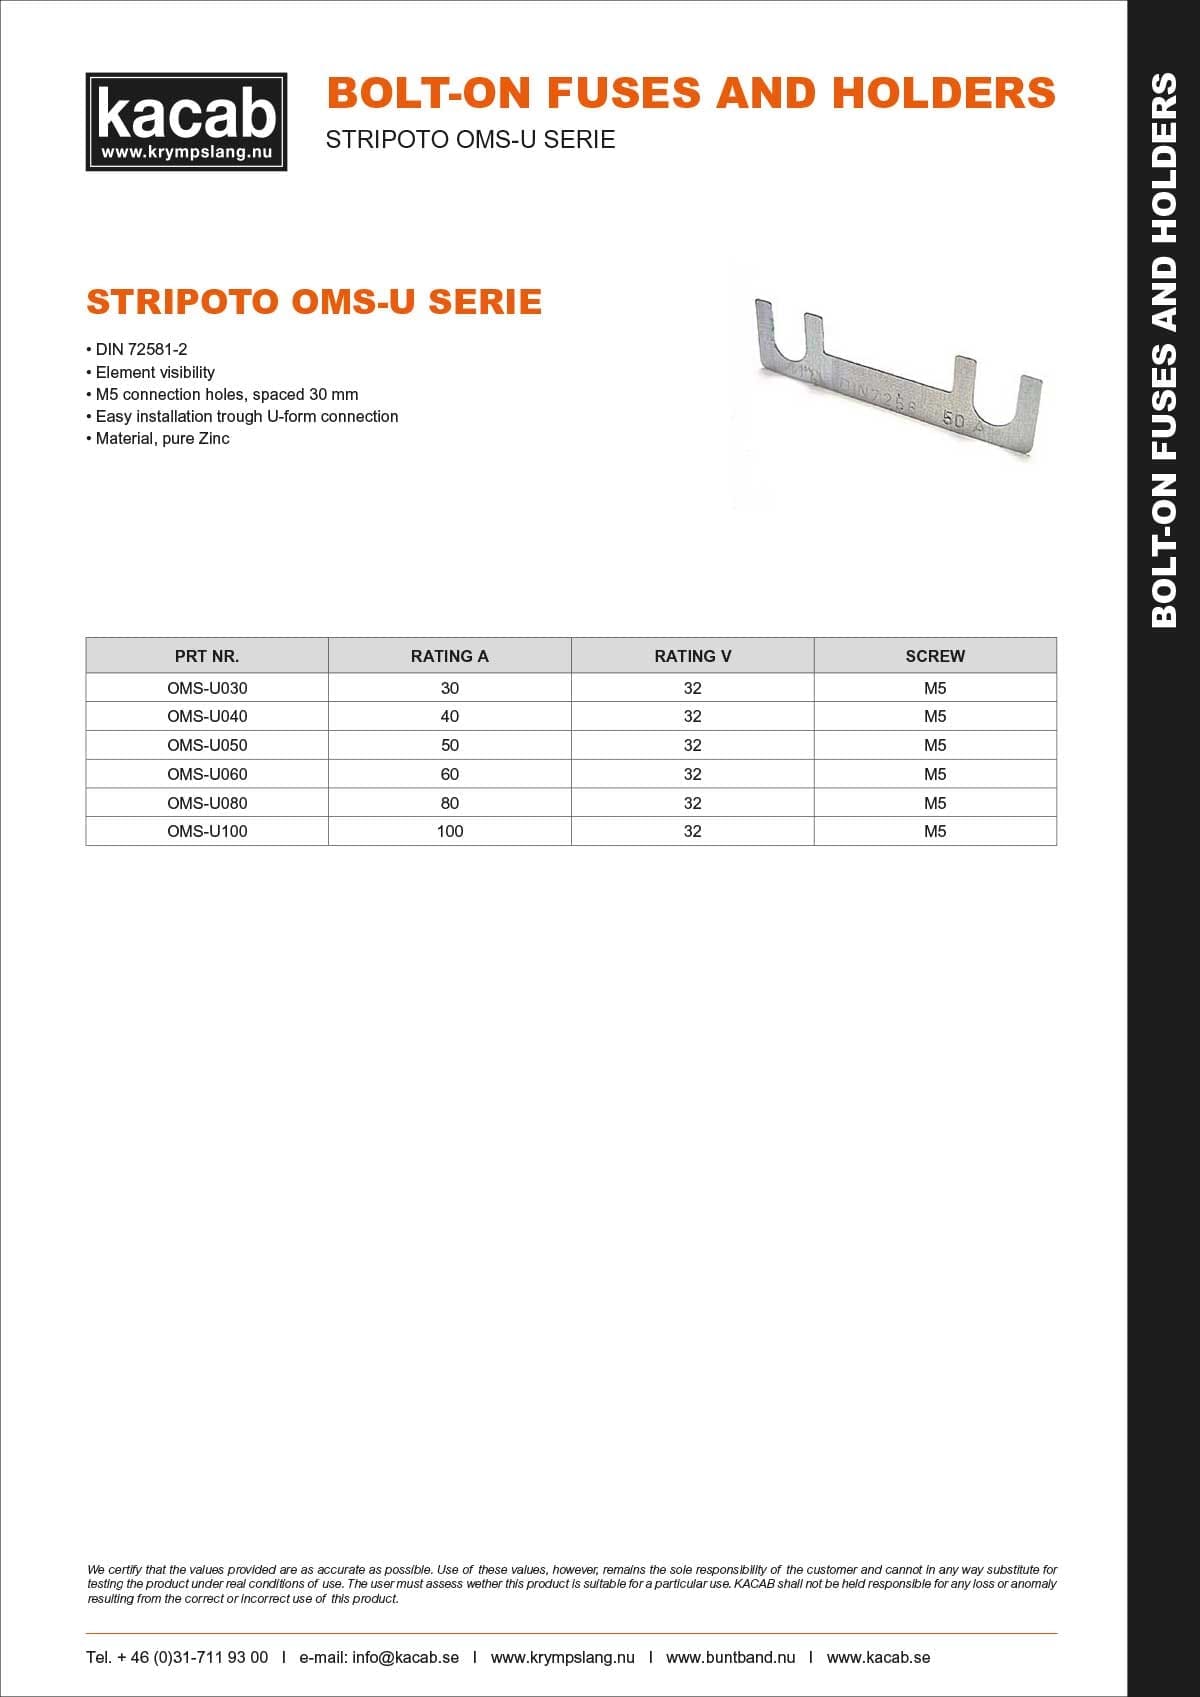 Stripoto OMS-U Series